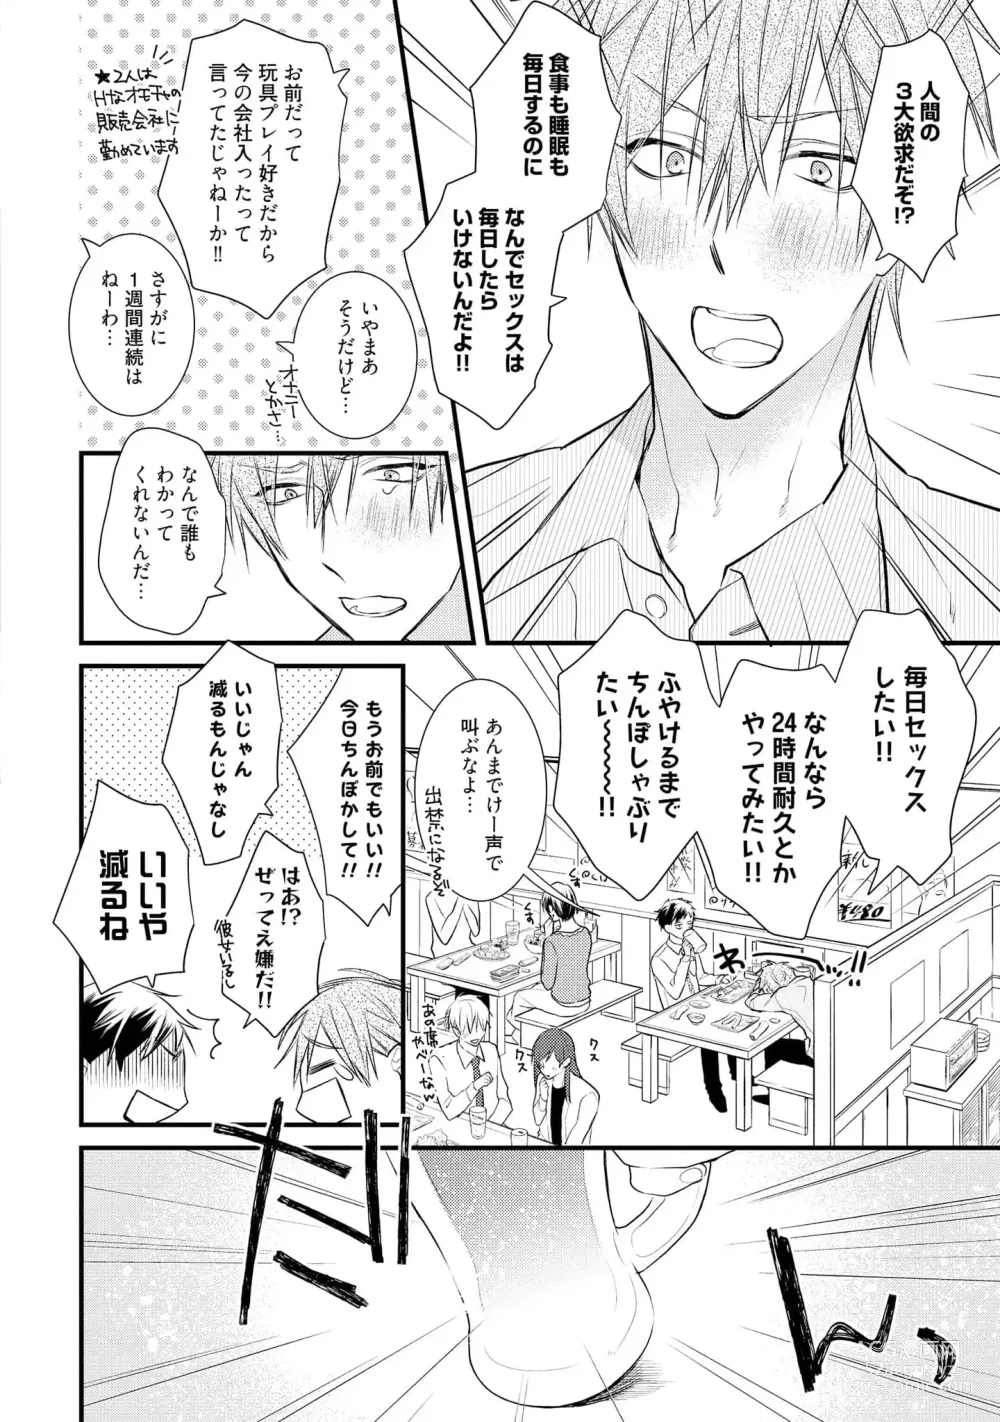 Page 8 of manga Ecchi wa shuu 7 Kibou Desu!